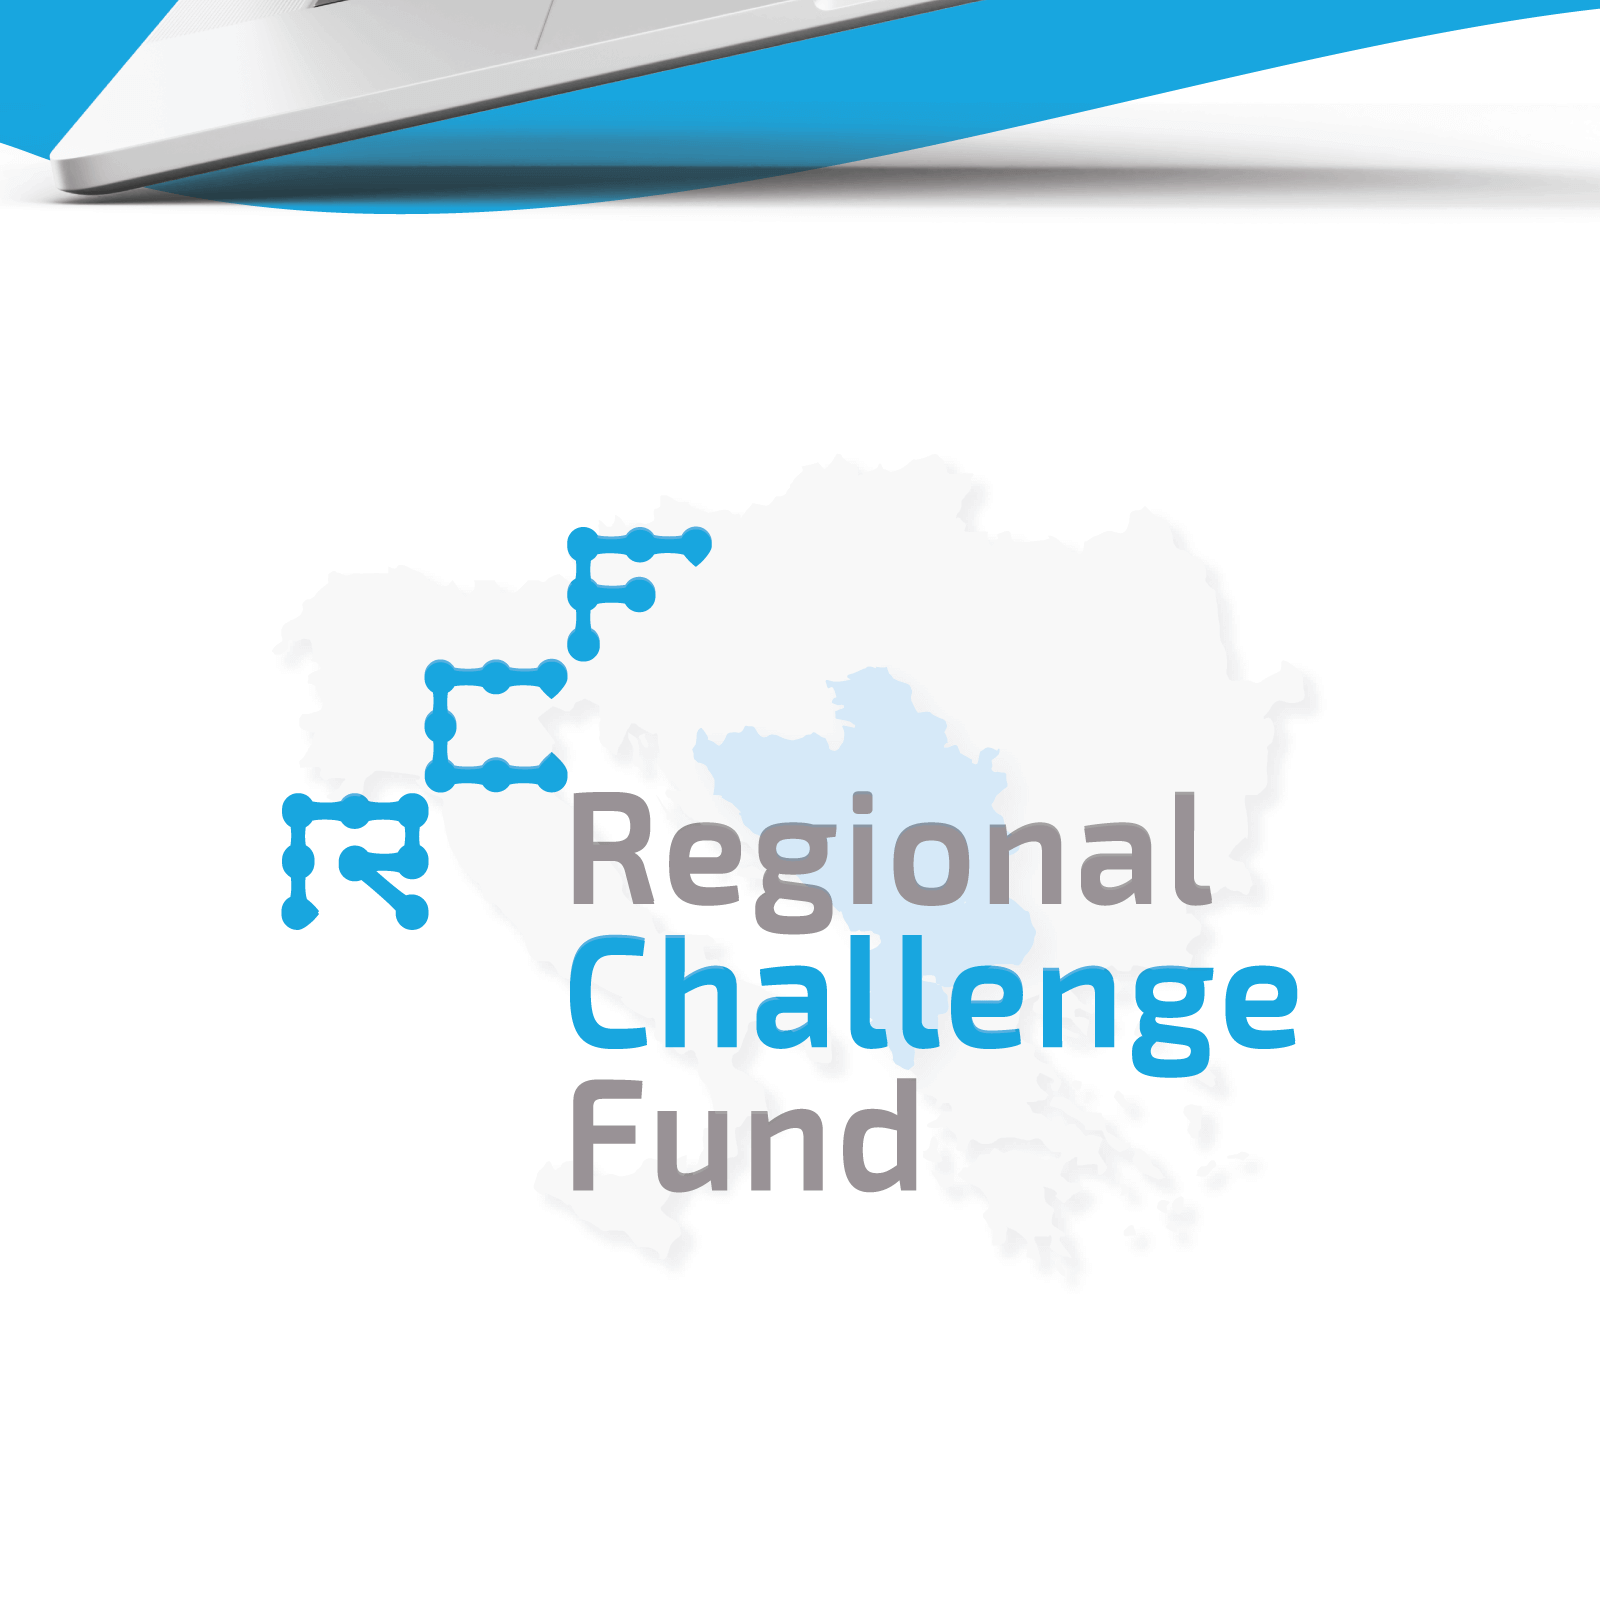 Regional Challenge Fund